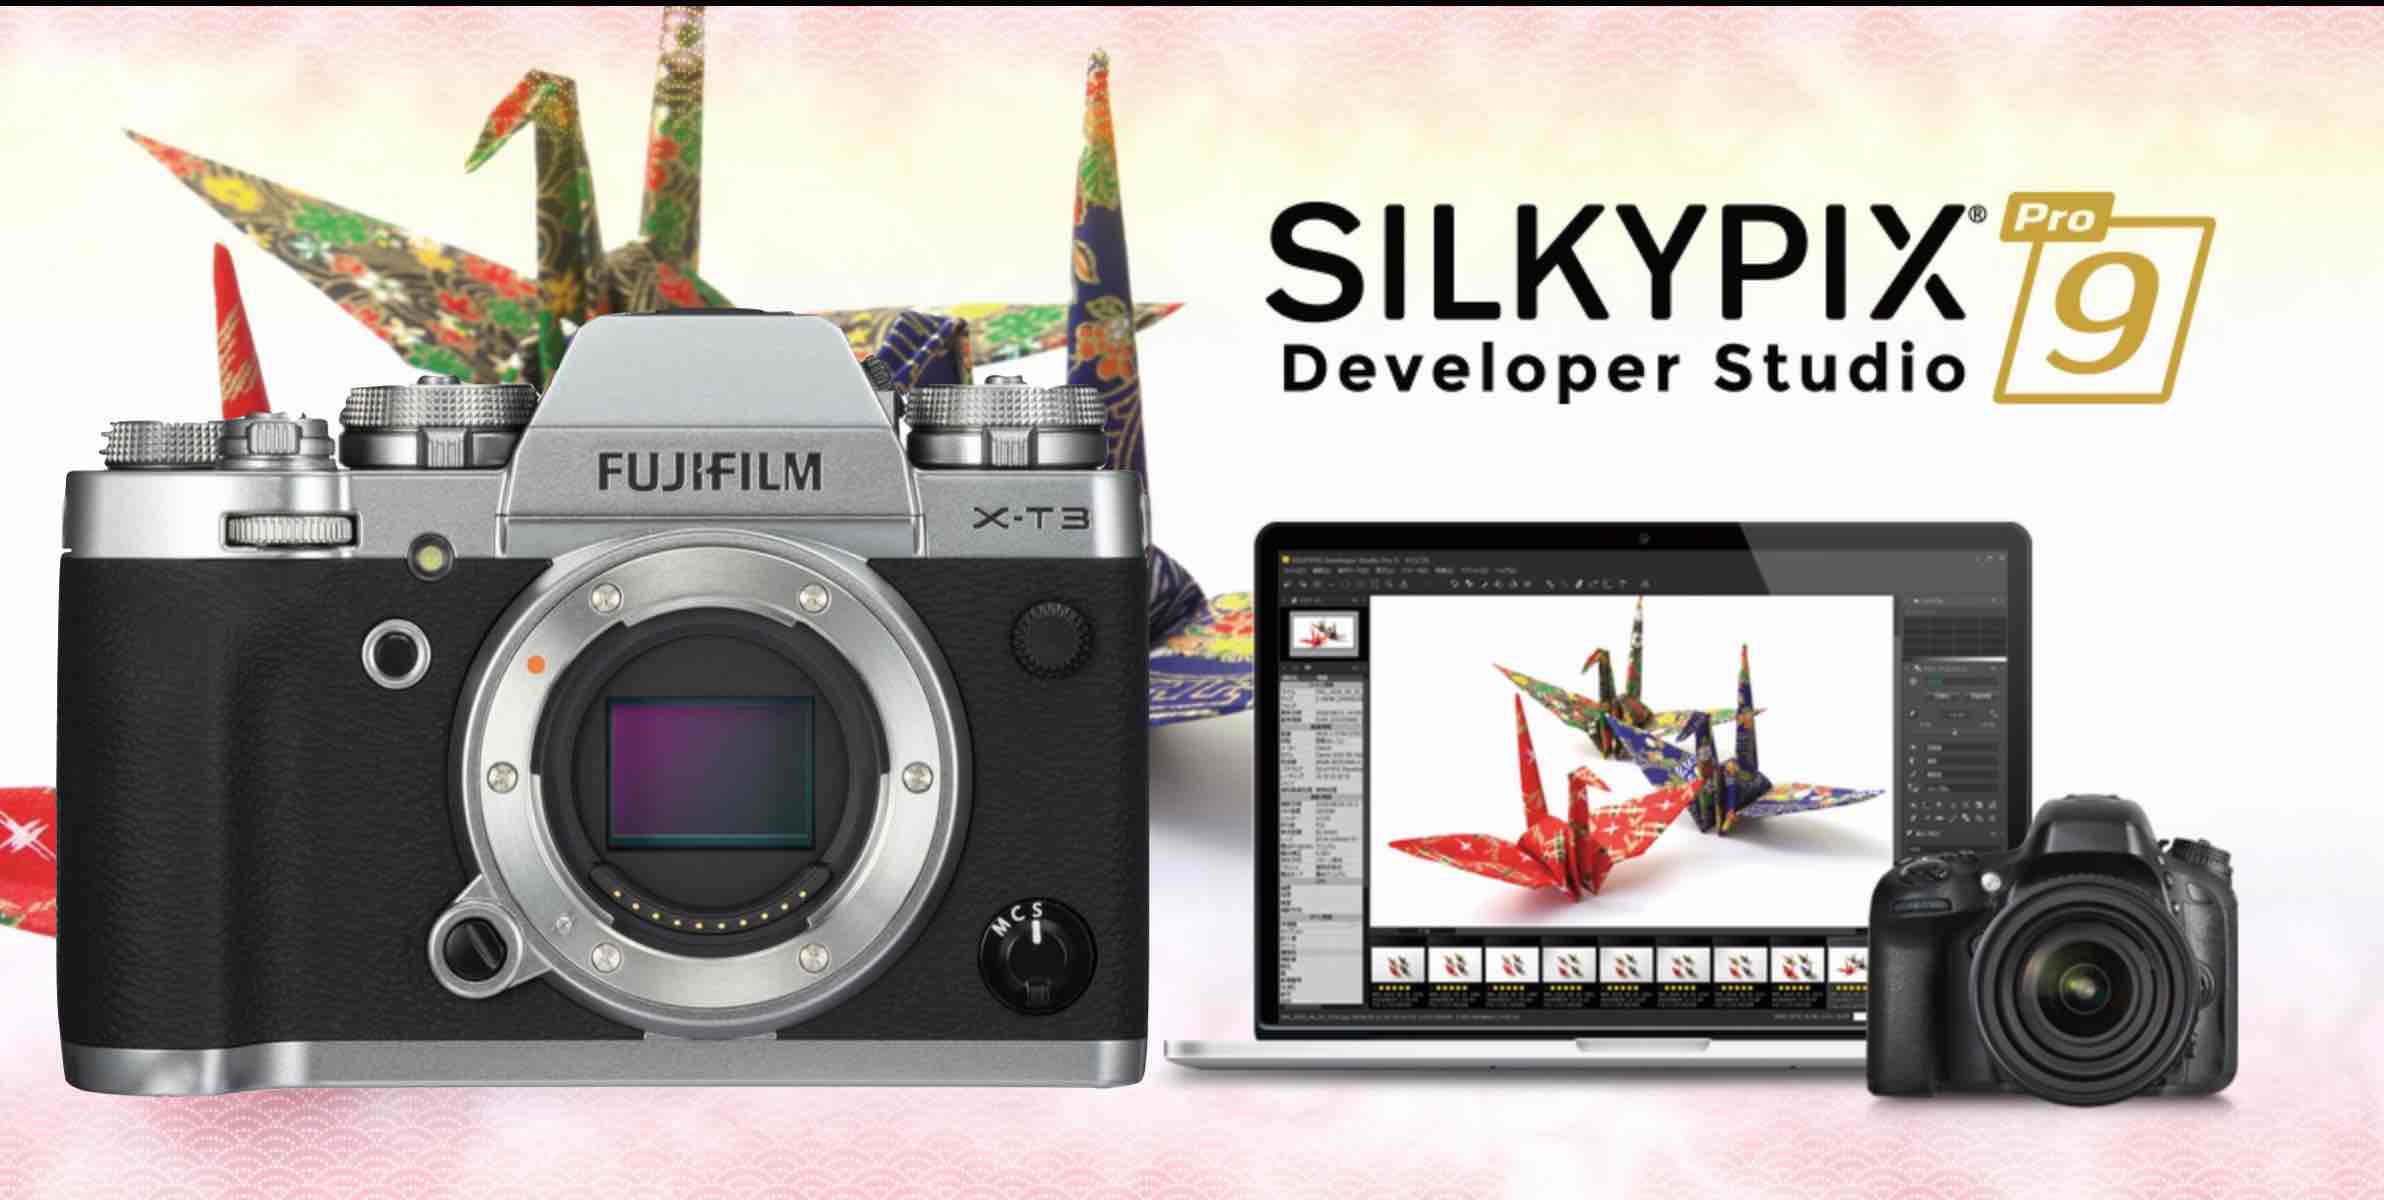 SILKYPIX developer Studio Pro for Fujifilm. Fujifilm Studio. Pro Studio Fujifilm. Fujifilm ad. Fujifilm support